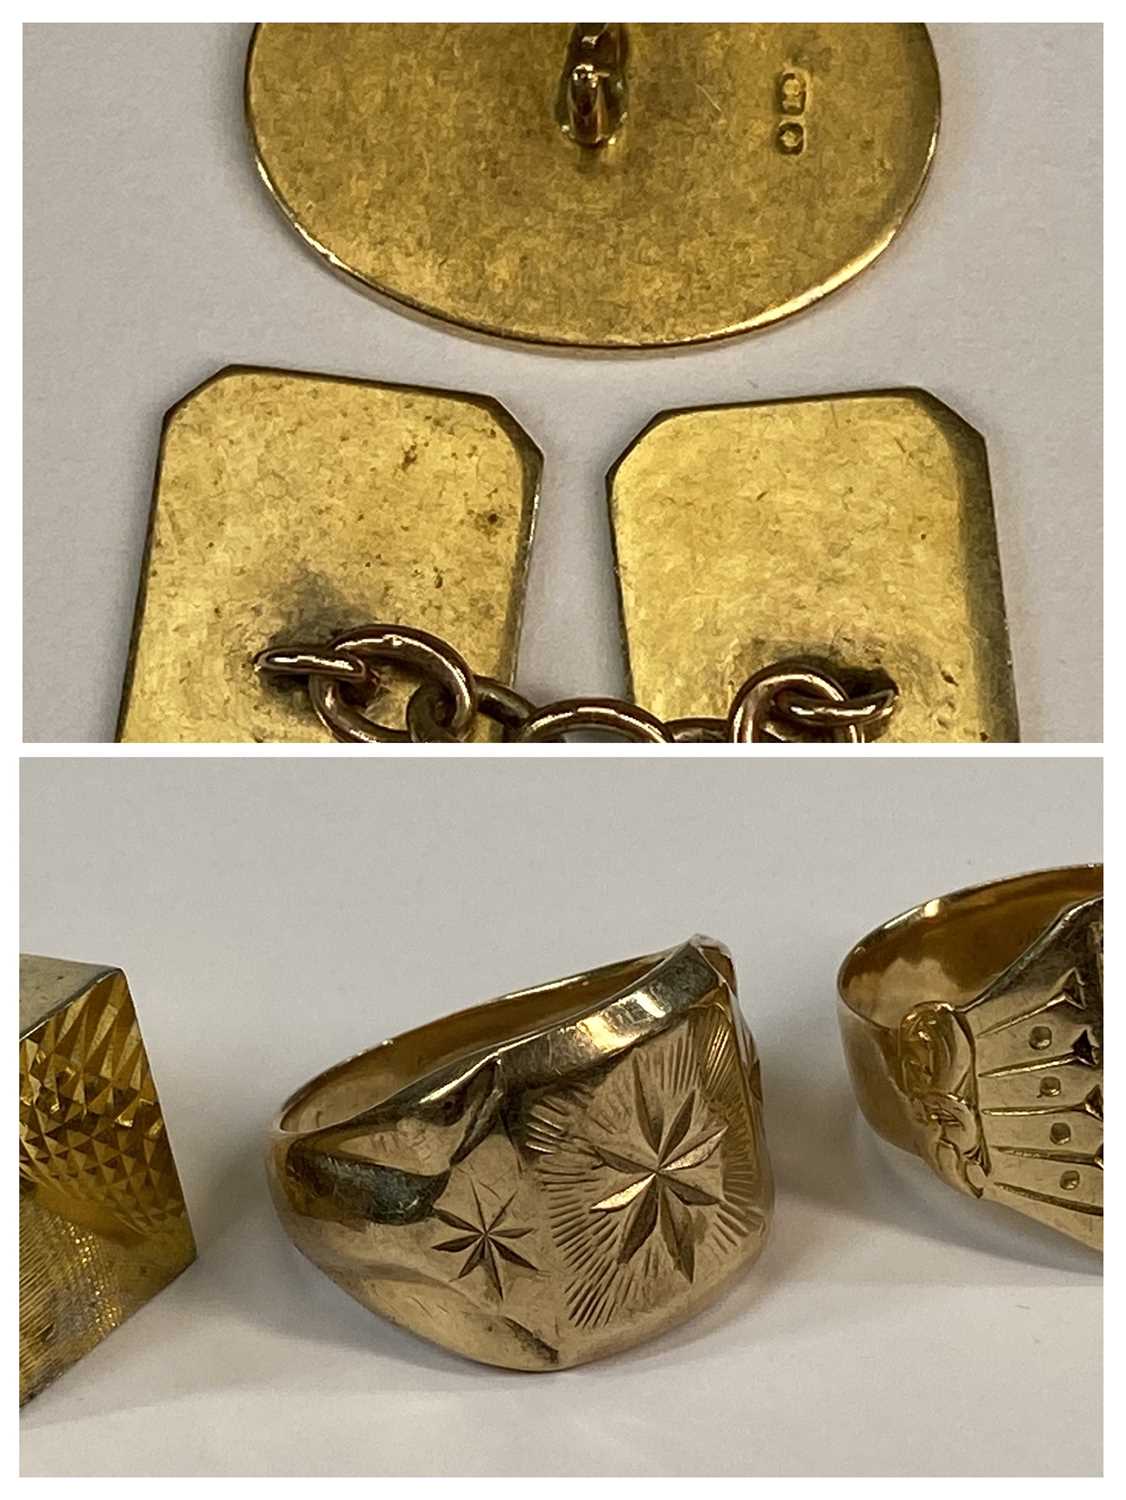 GOLD/YELLOW METAL GROUP comprising three large yellow metal signet rings, single cufflink, ETC